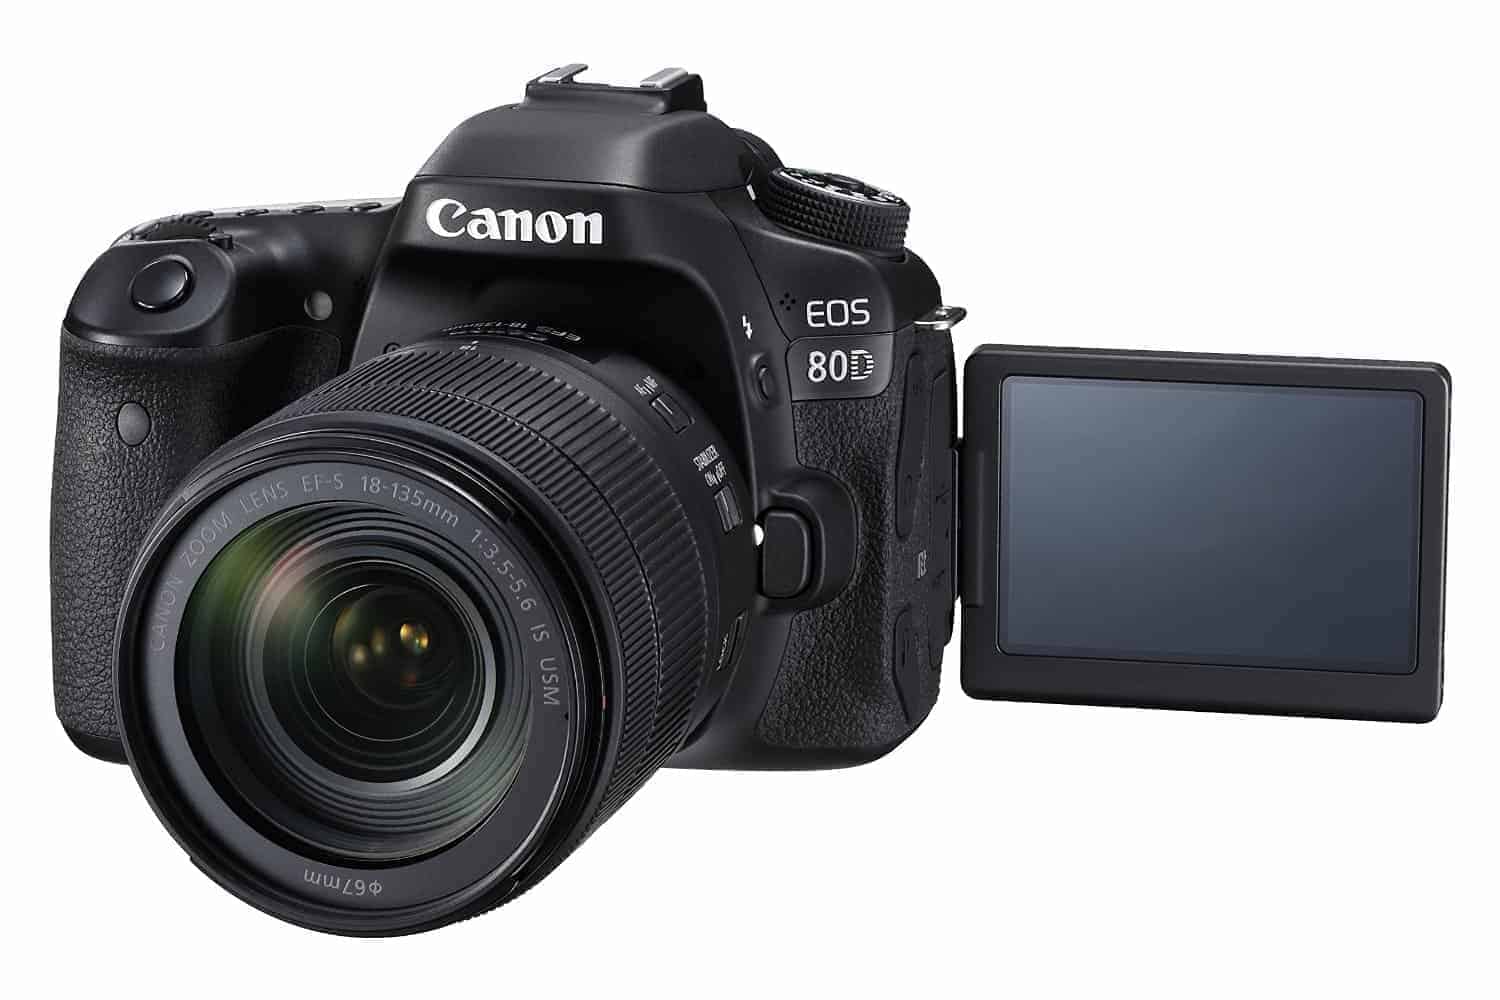 Canon Eos 80D Dslr: 5 Tips For Shooting Video | Stark Insider